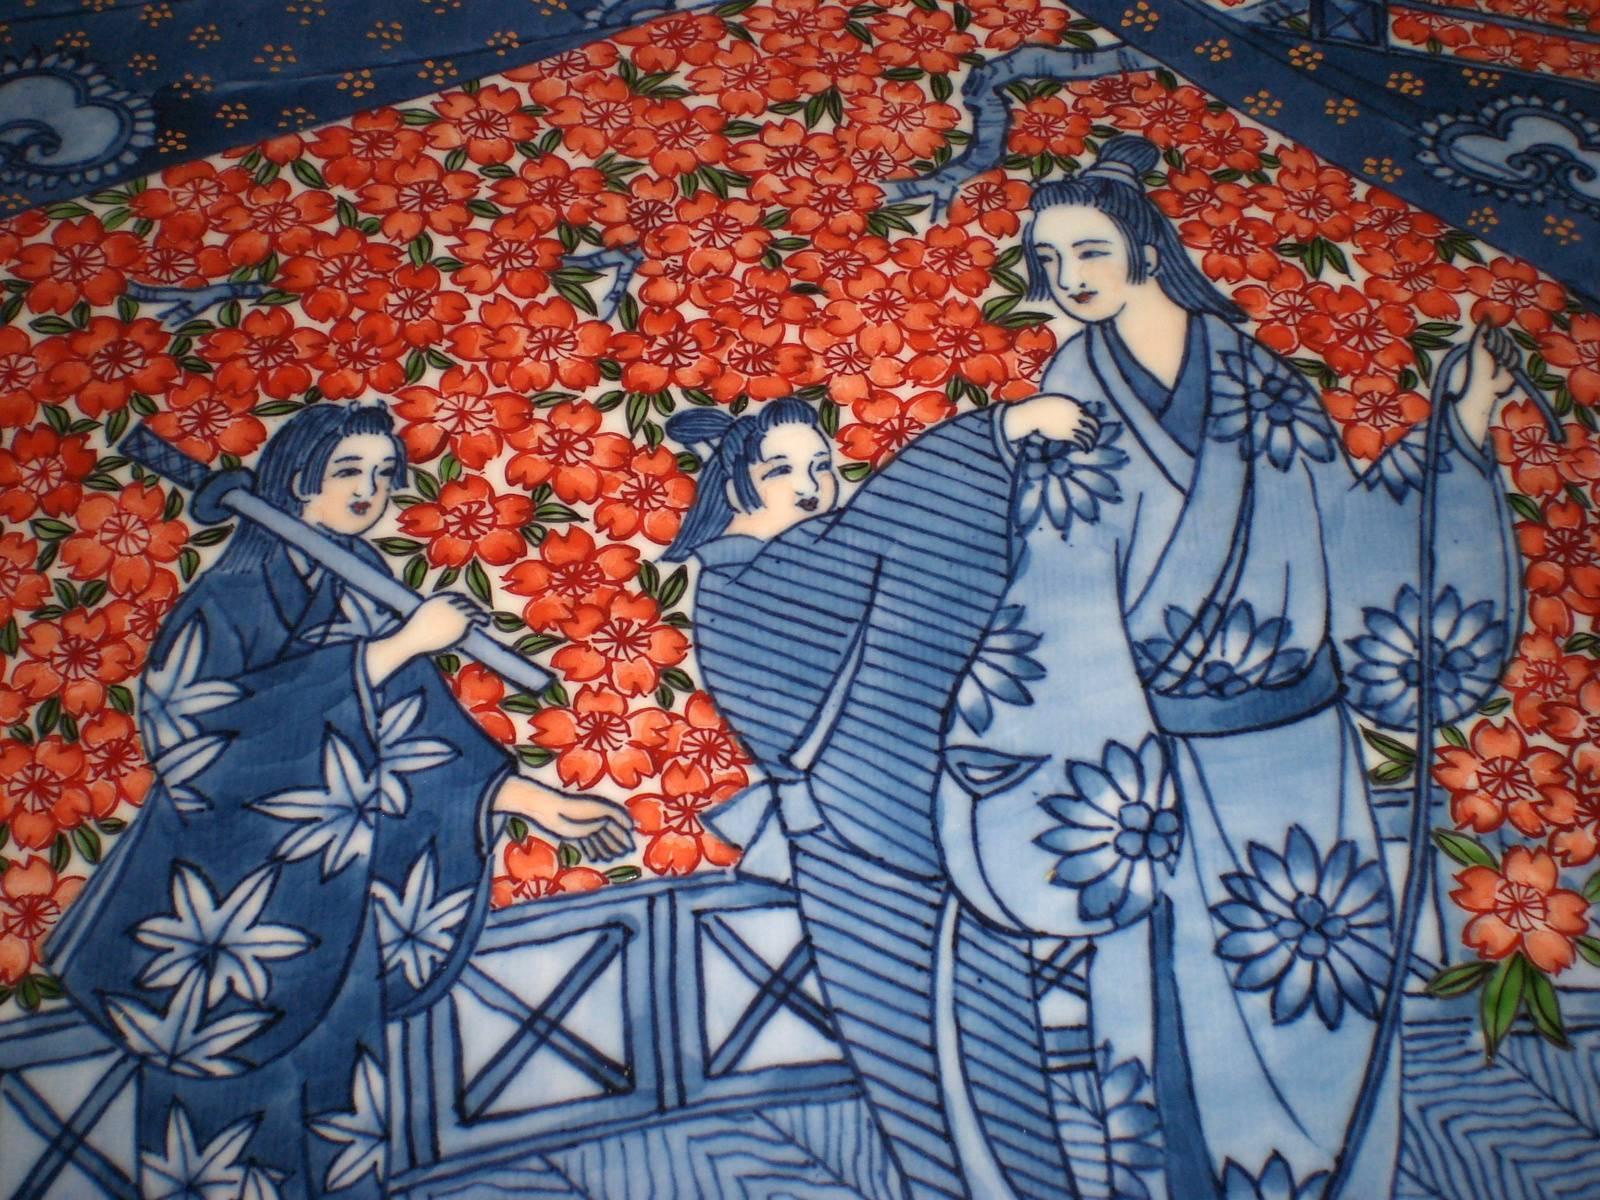 Cet exquis chargeur en porcelaine décorative japonaise contemporaine rouge et bleue est un chef-d'œuvre signé par un maître porcelainier de la région d'Imari-Aita, dans le sud de l'île de Kyushu, au Japon (1931-2009). Le chargeur peint à la main